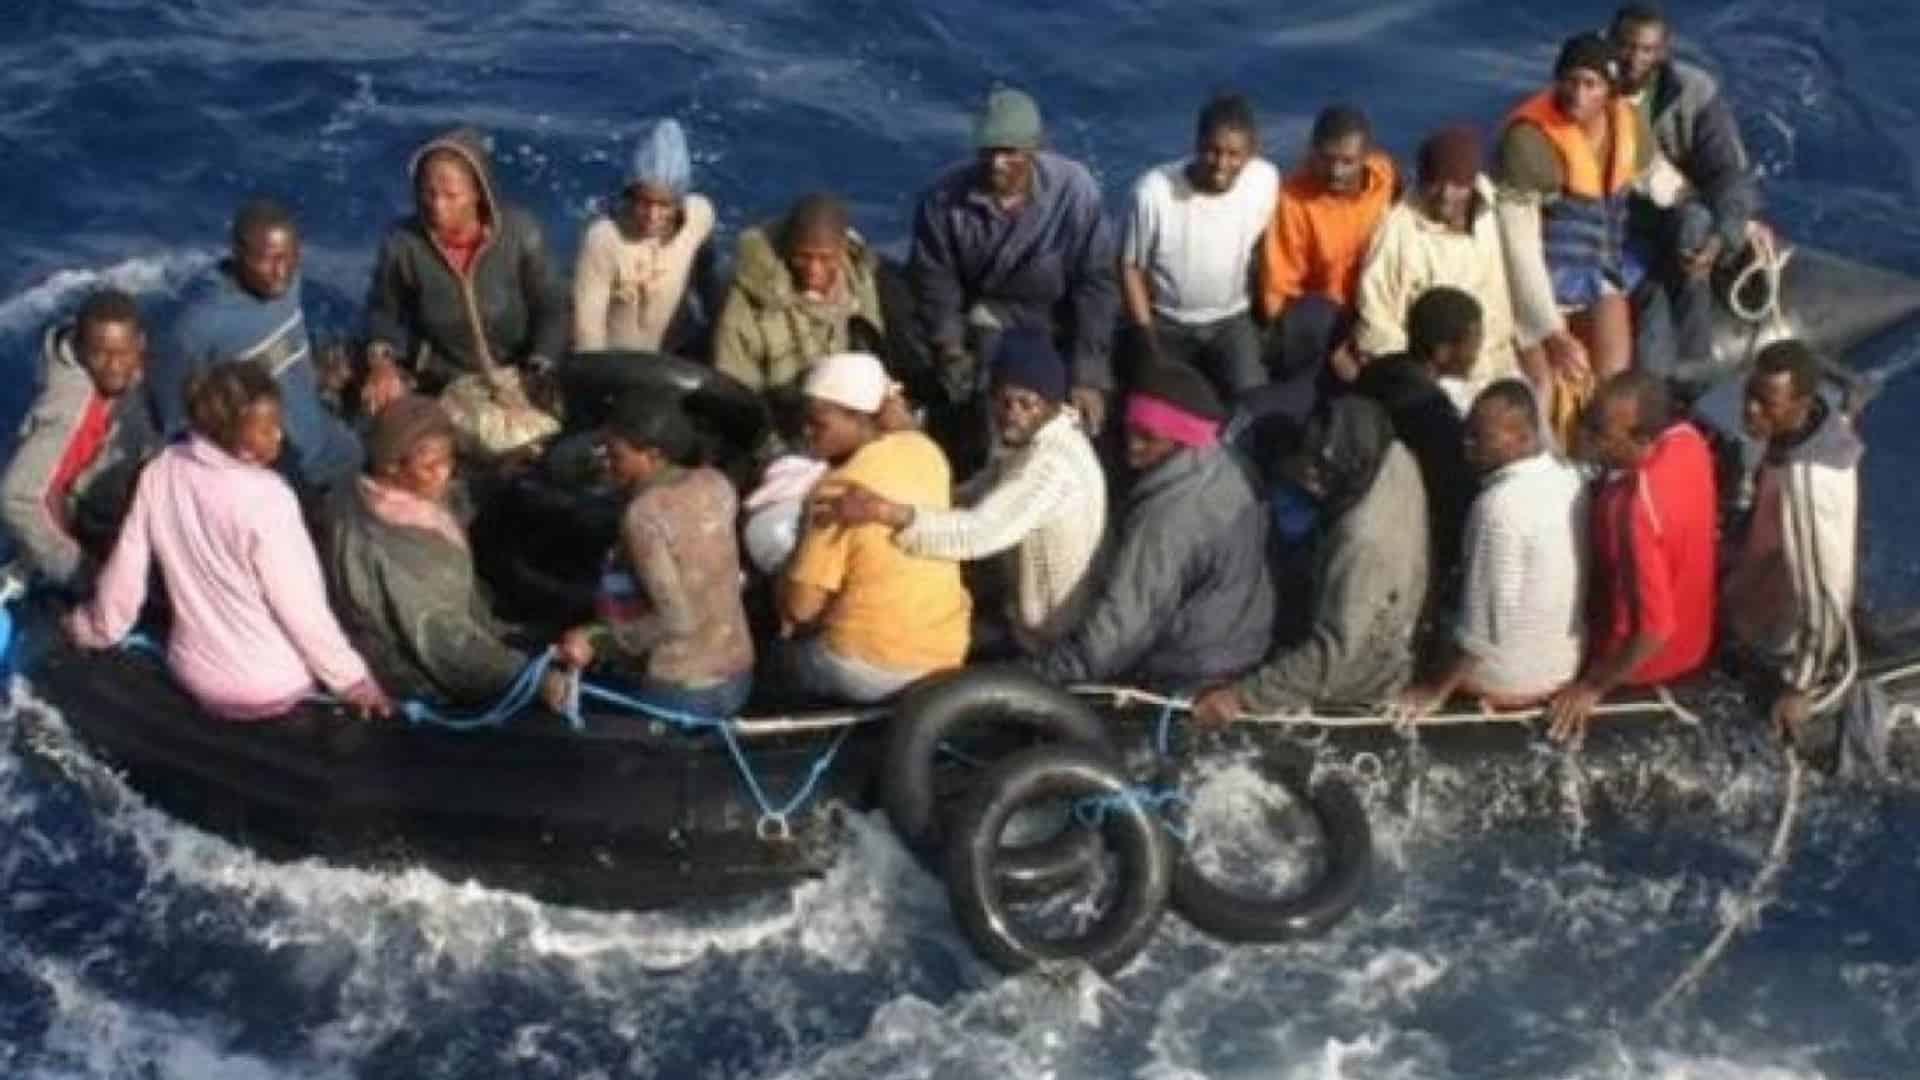 Οι Τούρκοι στέλνουν «καραβιές» με παράνομους αλλοδαπούς στην Κρήτη από την Λιβύη: «Το νησί μετατρέπεται σε “νέο Έβρο”»